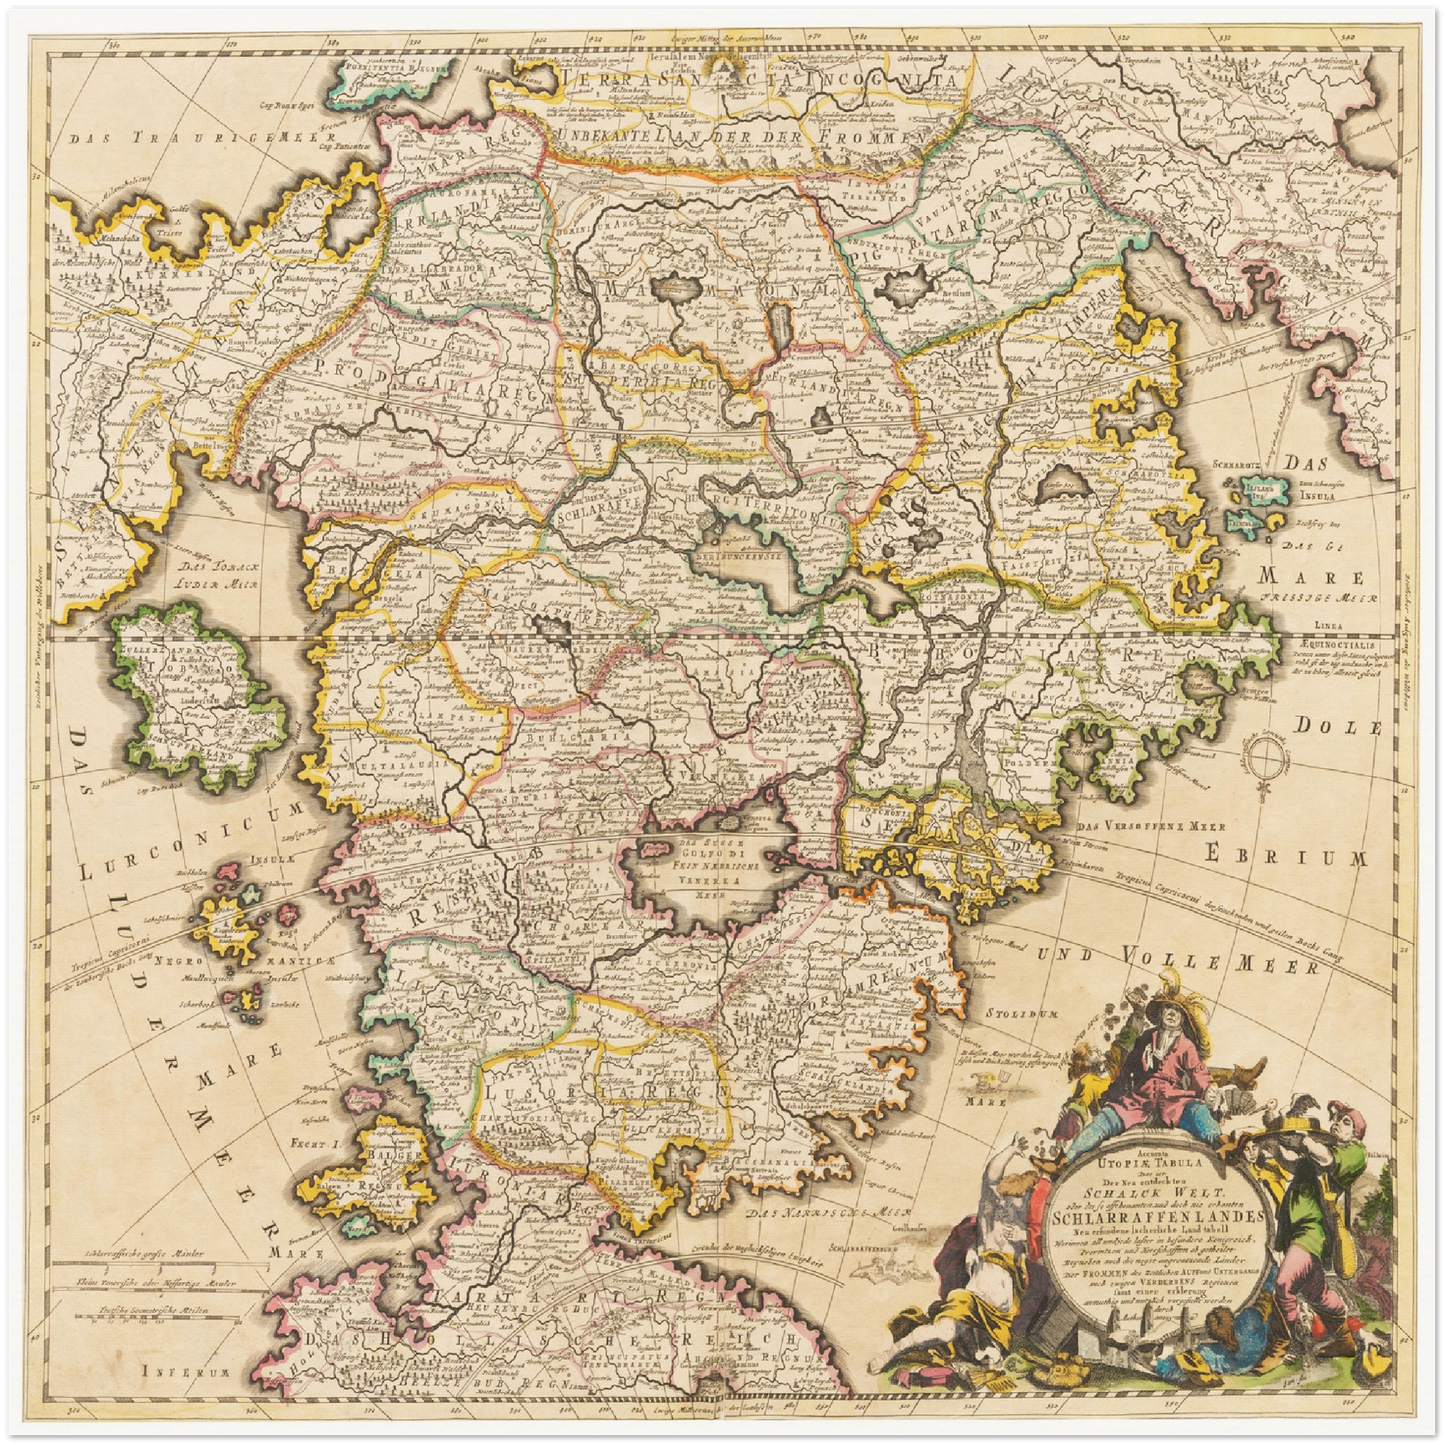 Historische Landkarte Schlaraffenland um 1694